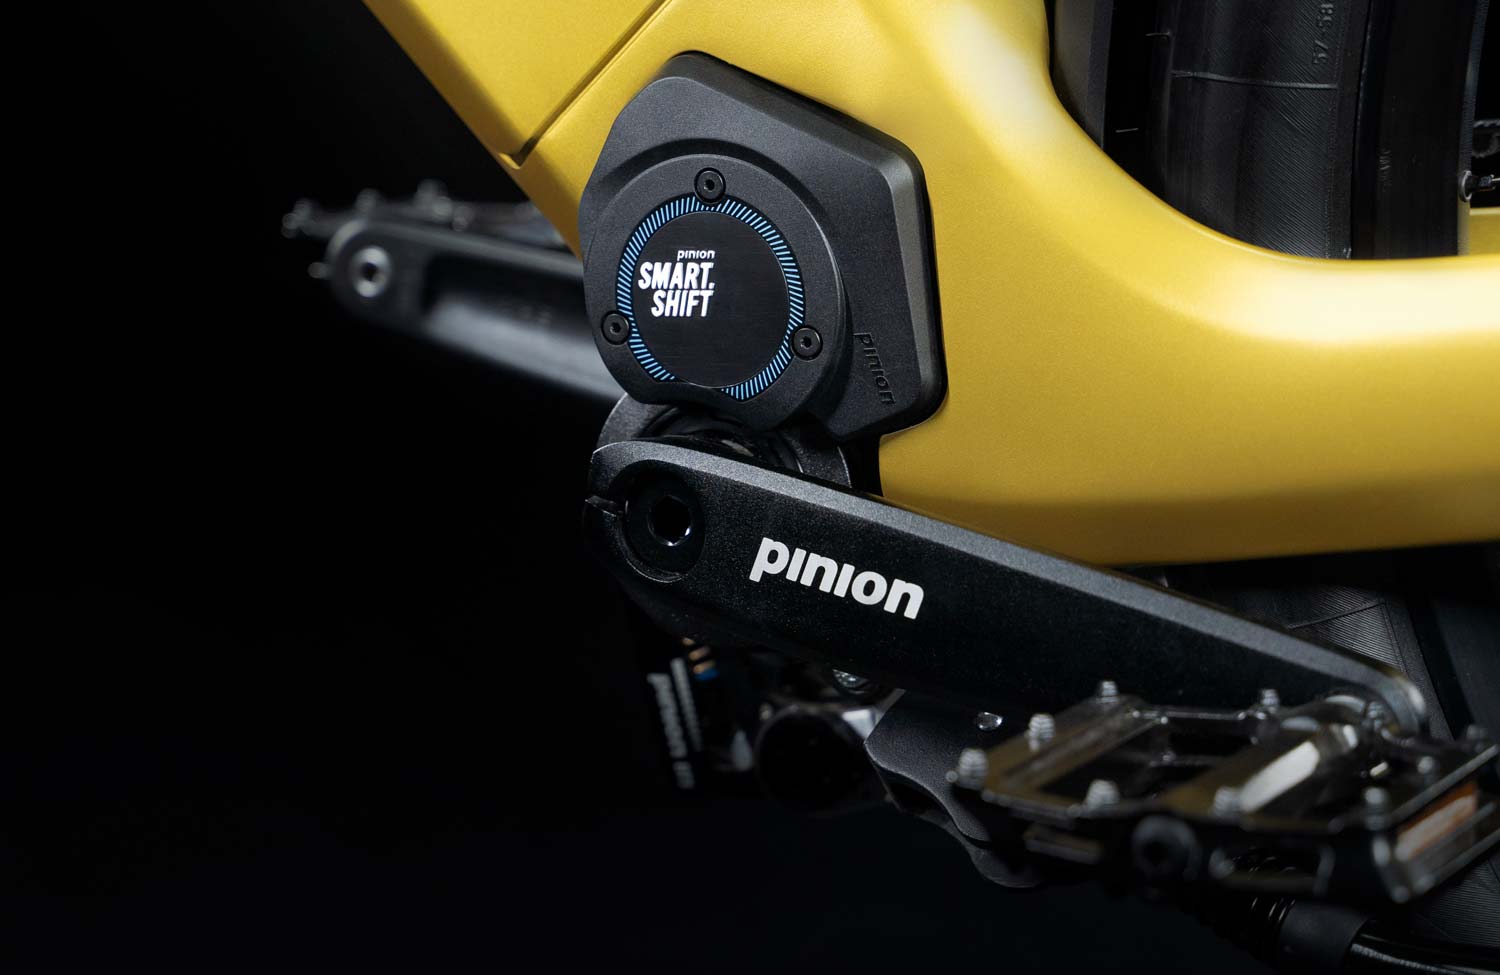 Pinion Smart Shift